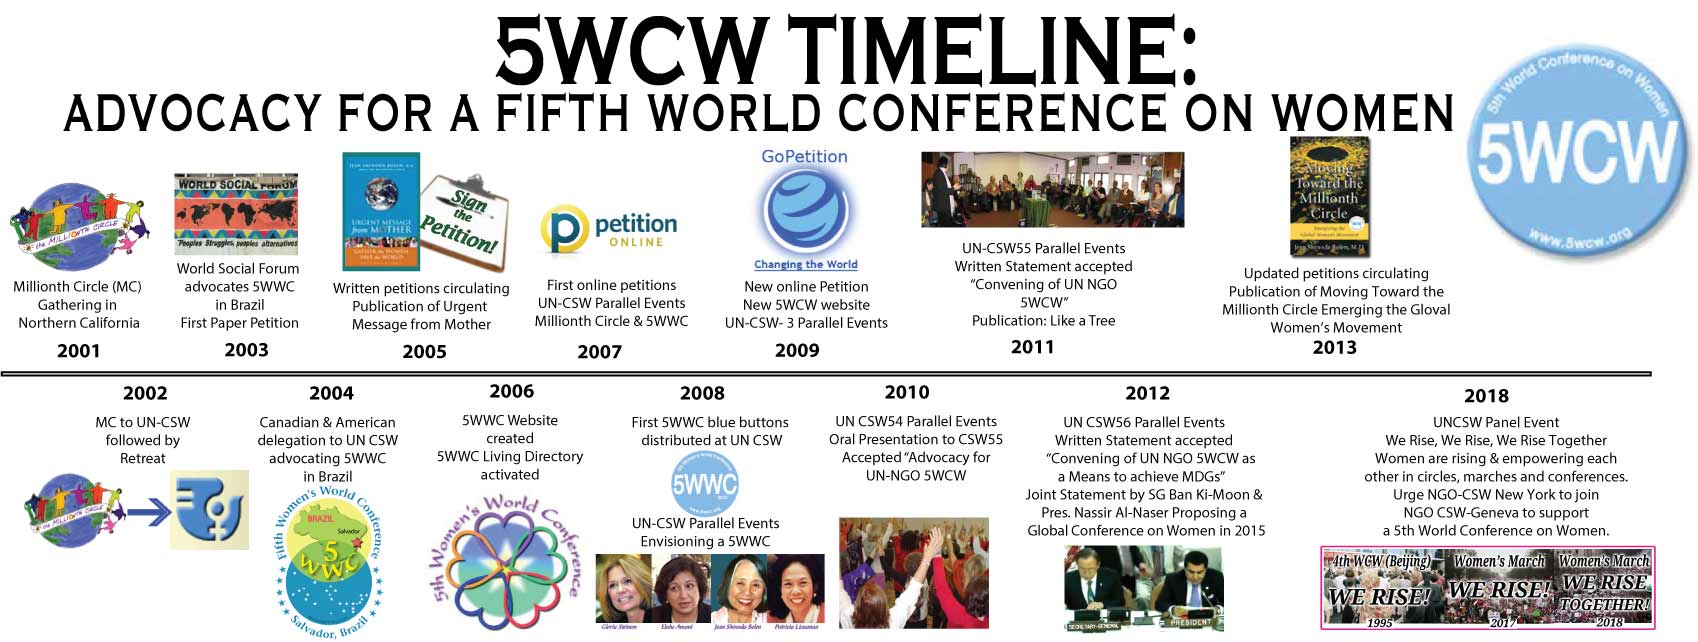 5WCW Timeline